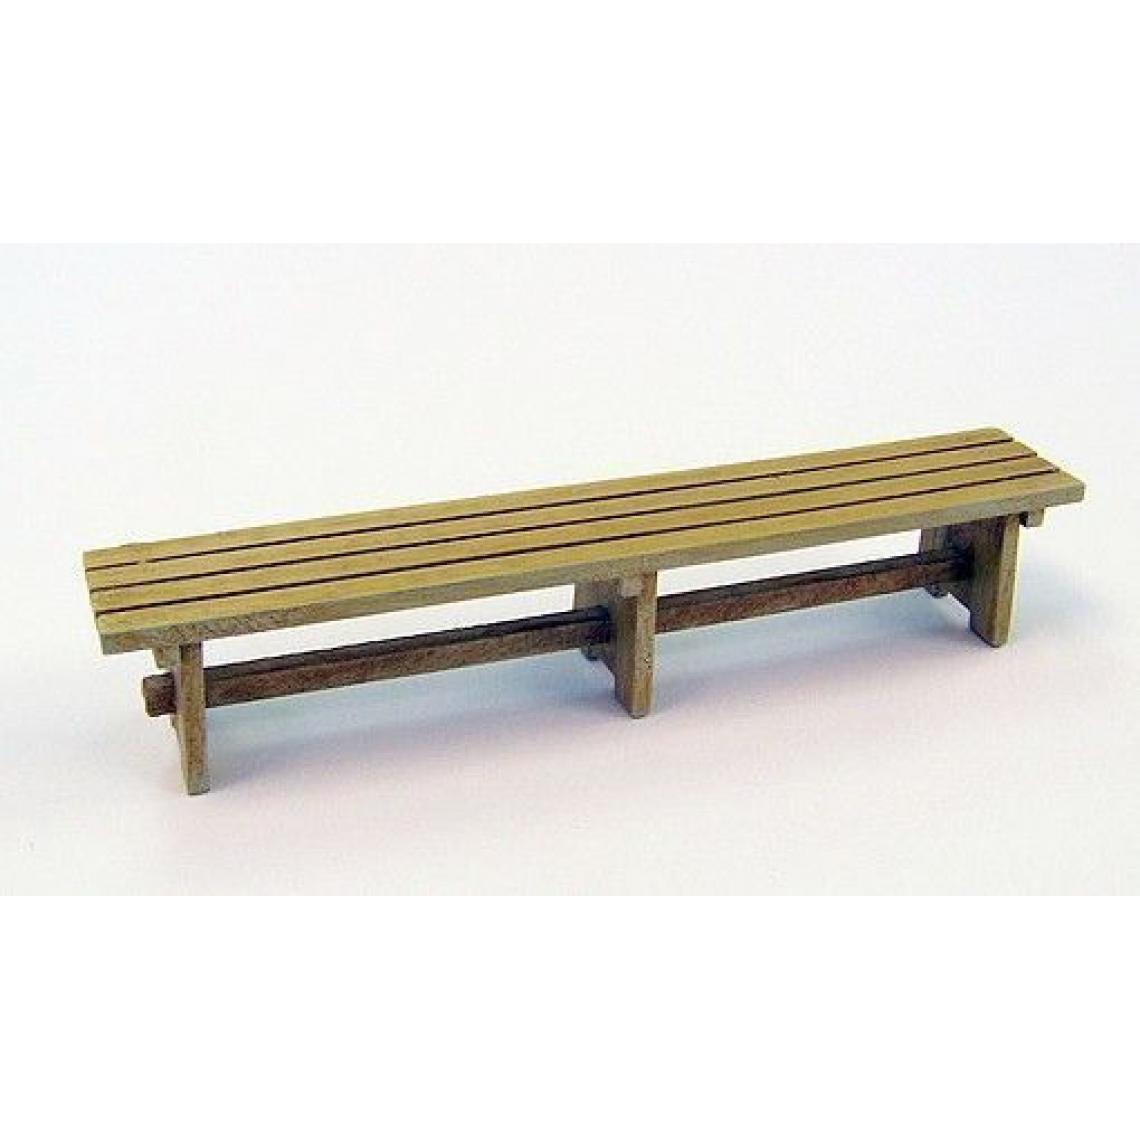 Plus Model - Wooden Bench - 1:35e - Plus model - Accessoires et pièces